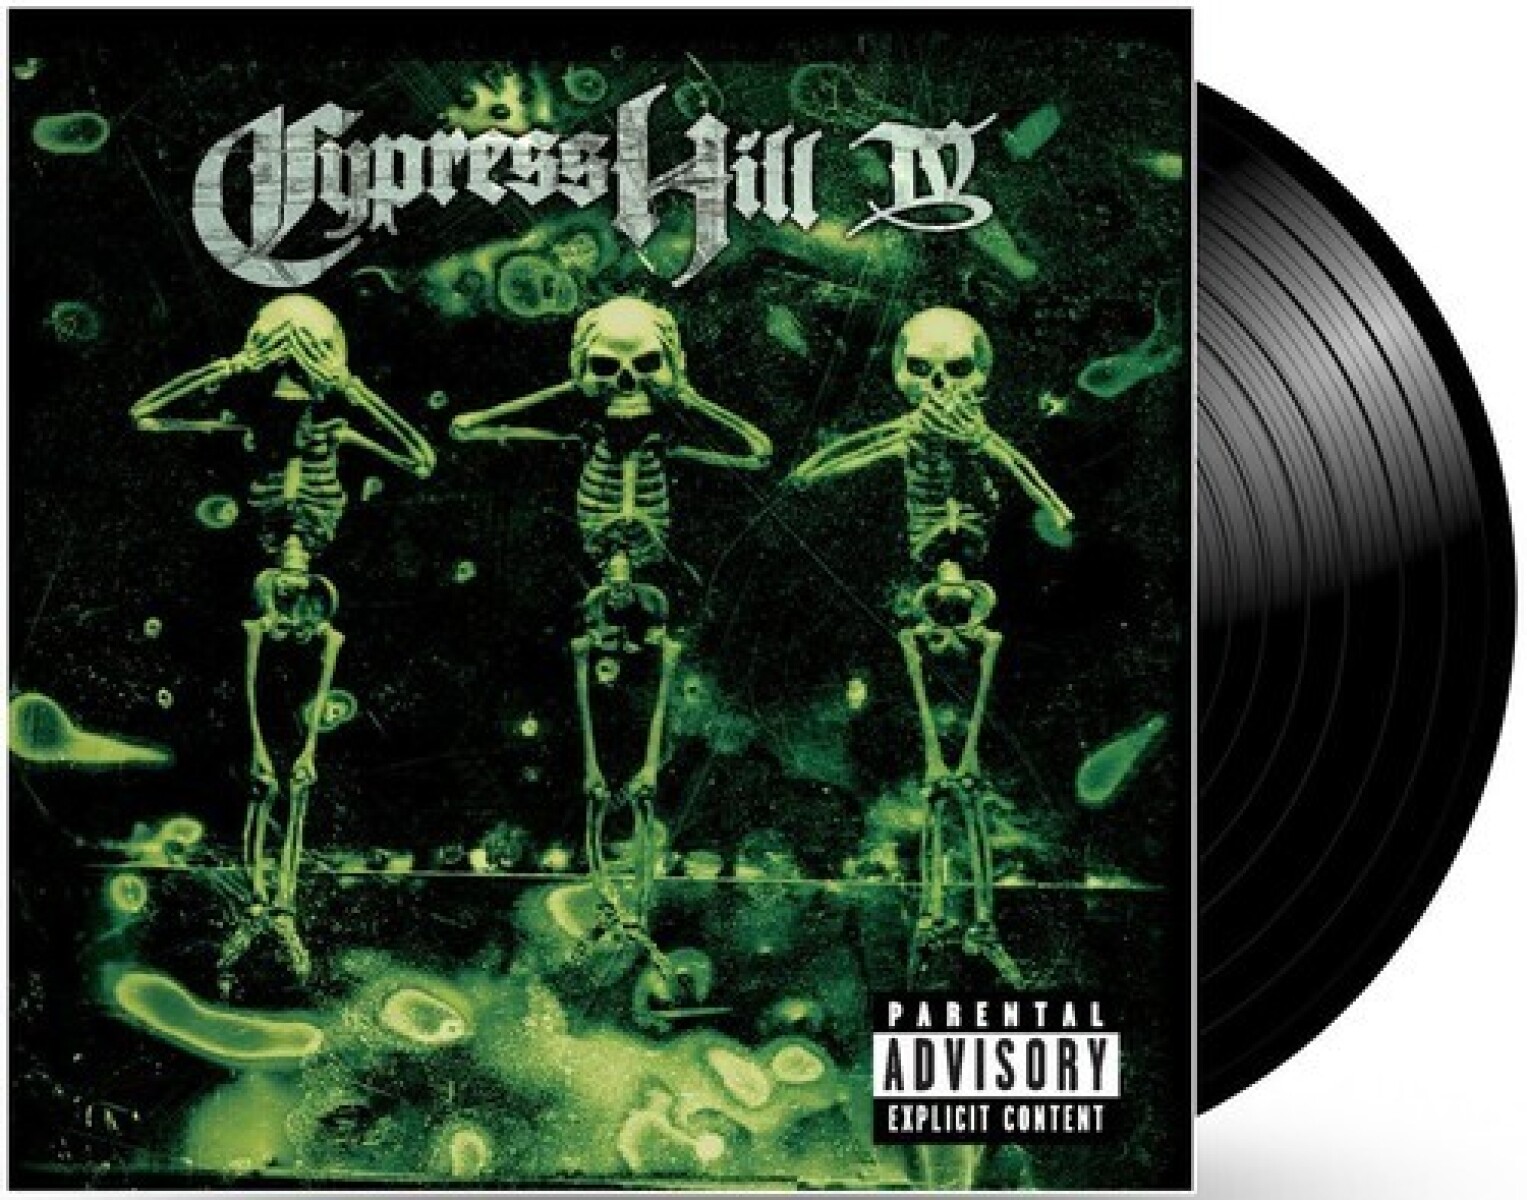 (l) Cypress Hill-iv. Mov Transition - Vinilo 